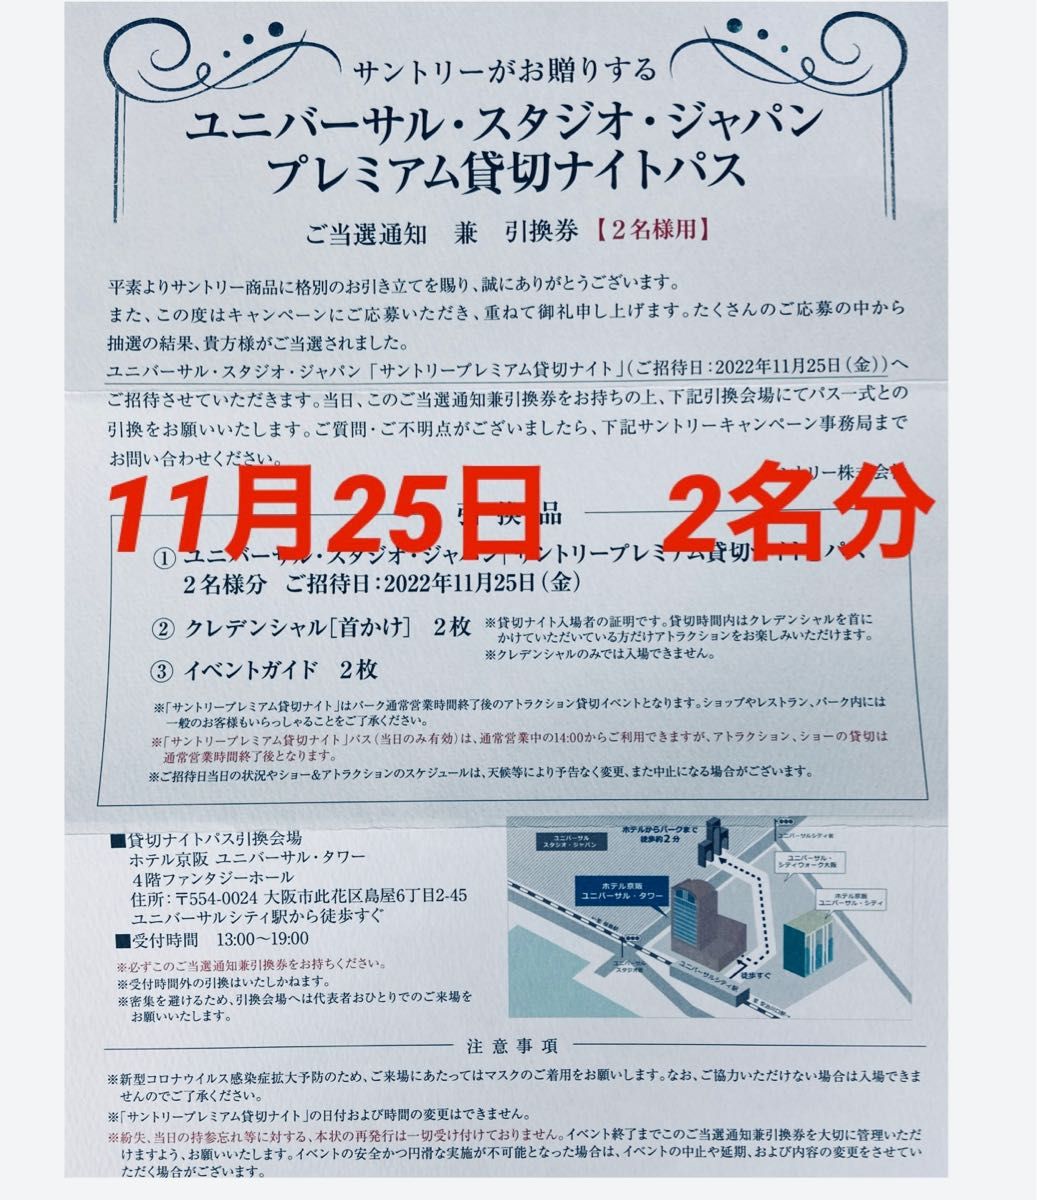 12/3(土) USJチケット4名分 ハッピー&サンクスフェスタ2022 whitebox.vn